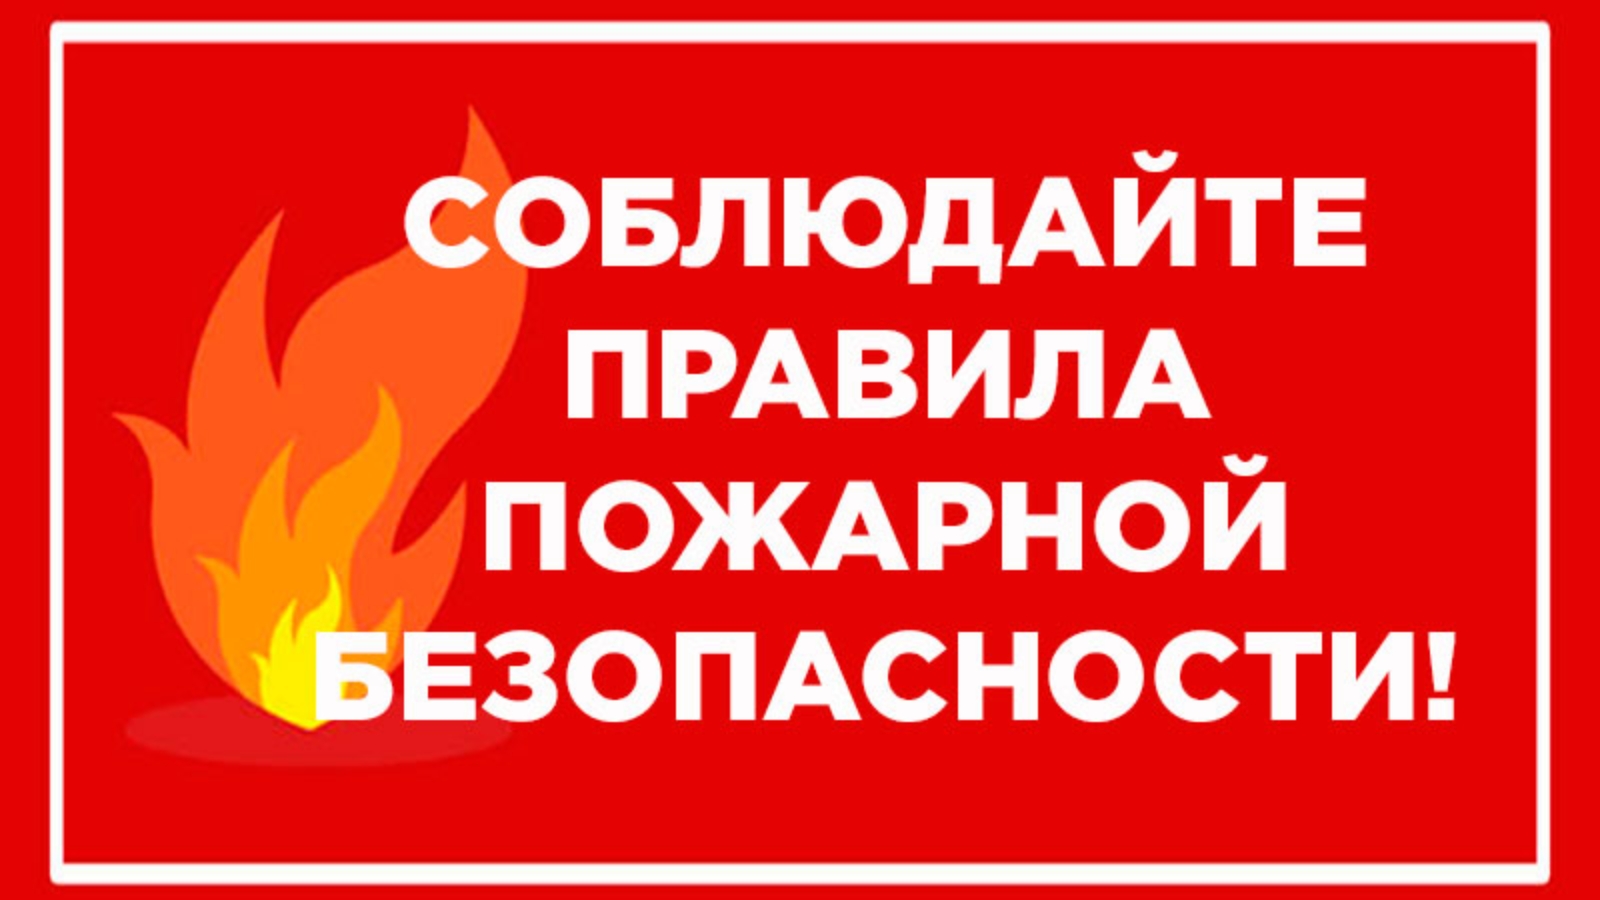 Избежать пожара несложно, если соблюдать меры предосторожности.